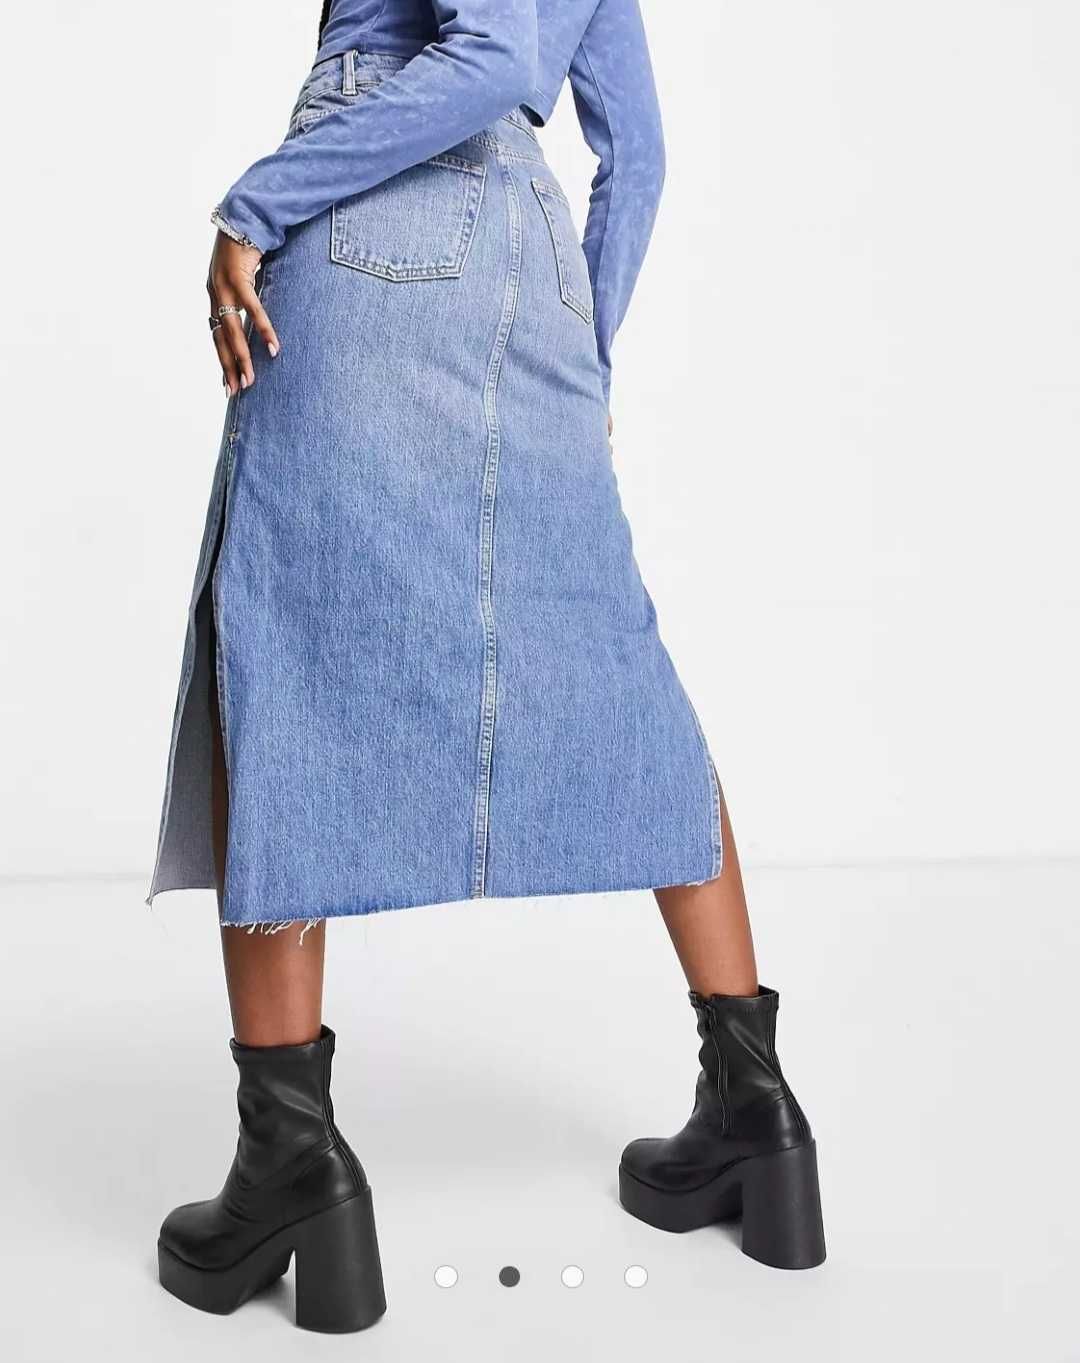 Стильная джинсовая юбка миди с разрезомы по бокам topshop